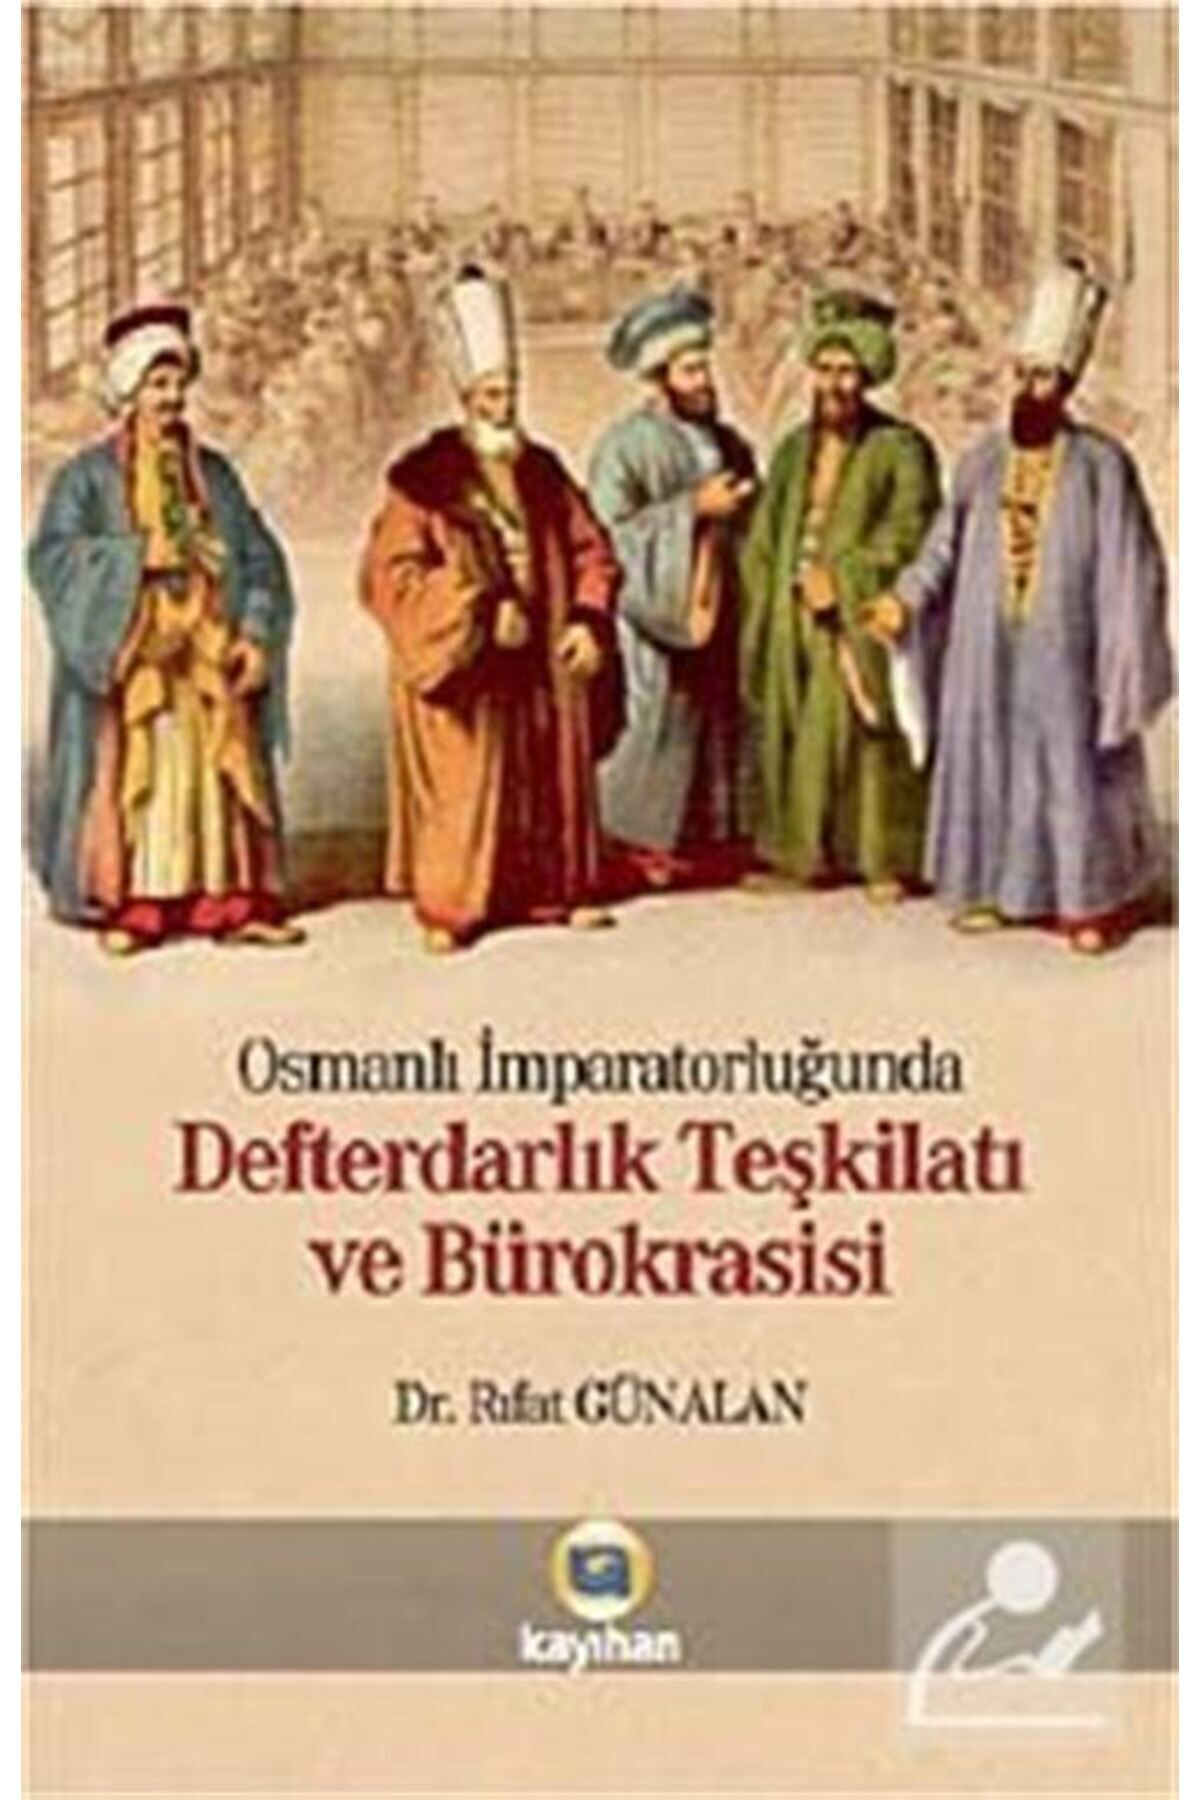 Kayıhan Yayınları Osmanlı Imparatorluğunda Defterdarlık Teşkilatı Ve Bürokrasi